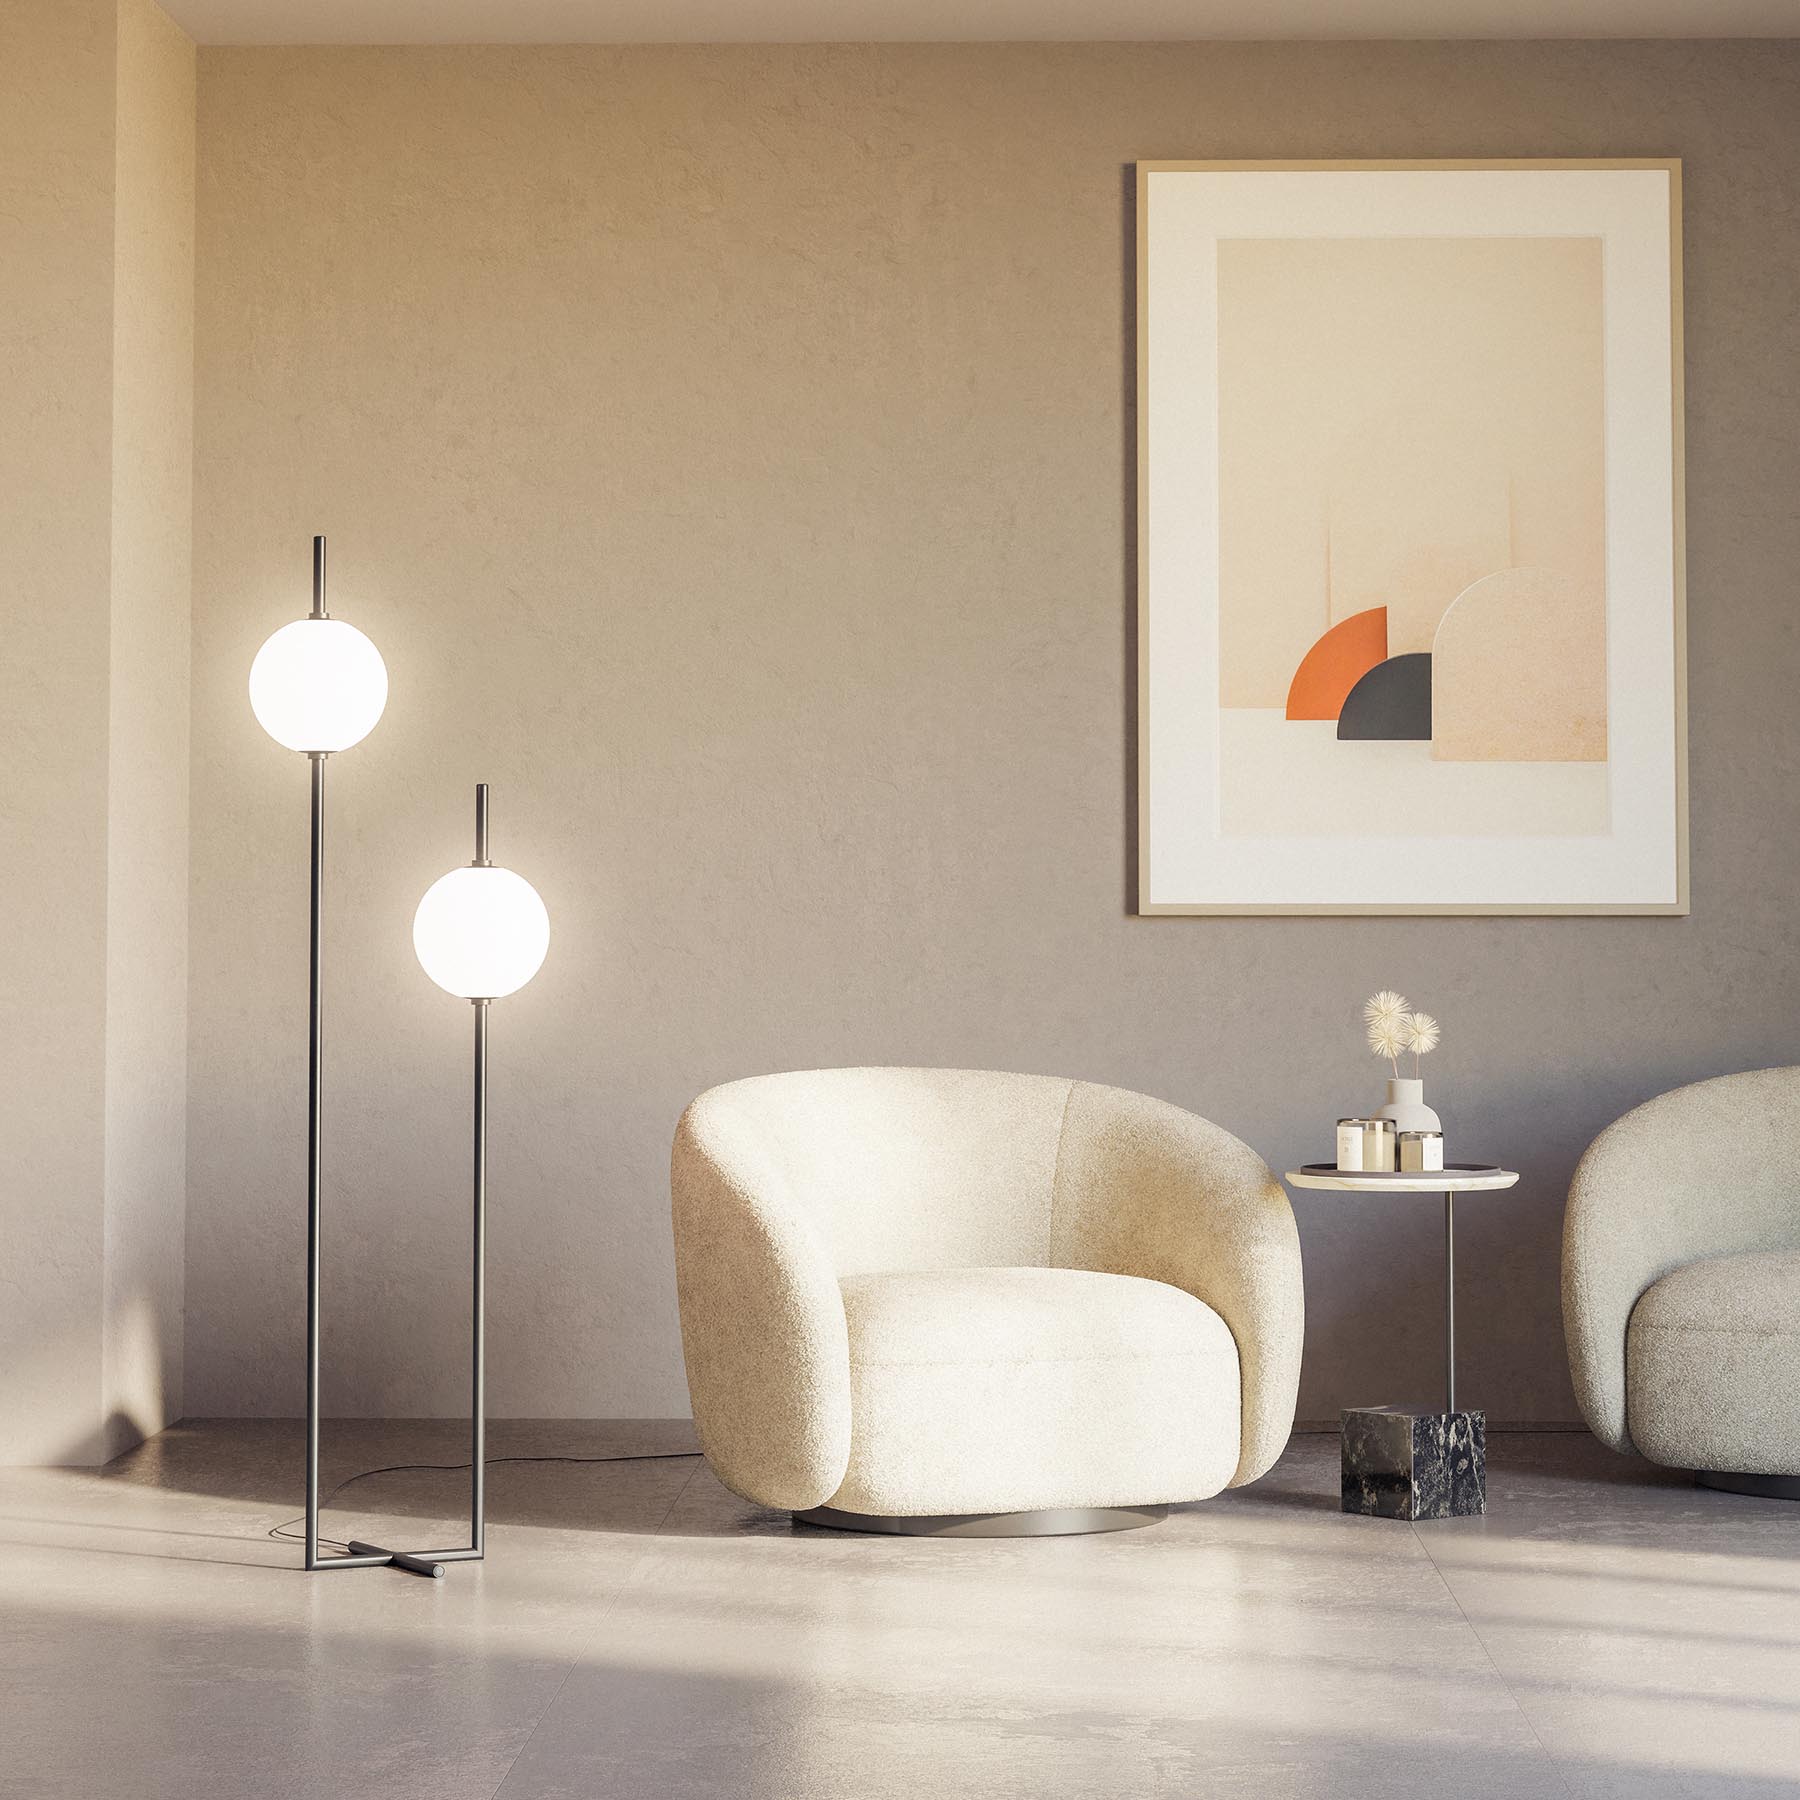 The Sixth Sence Floor Lamp by Alexey Danilin